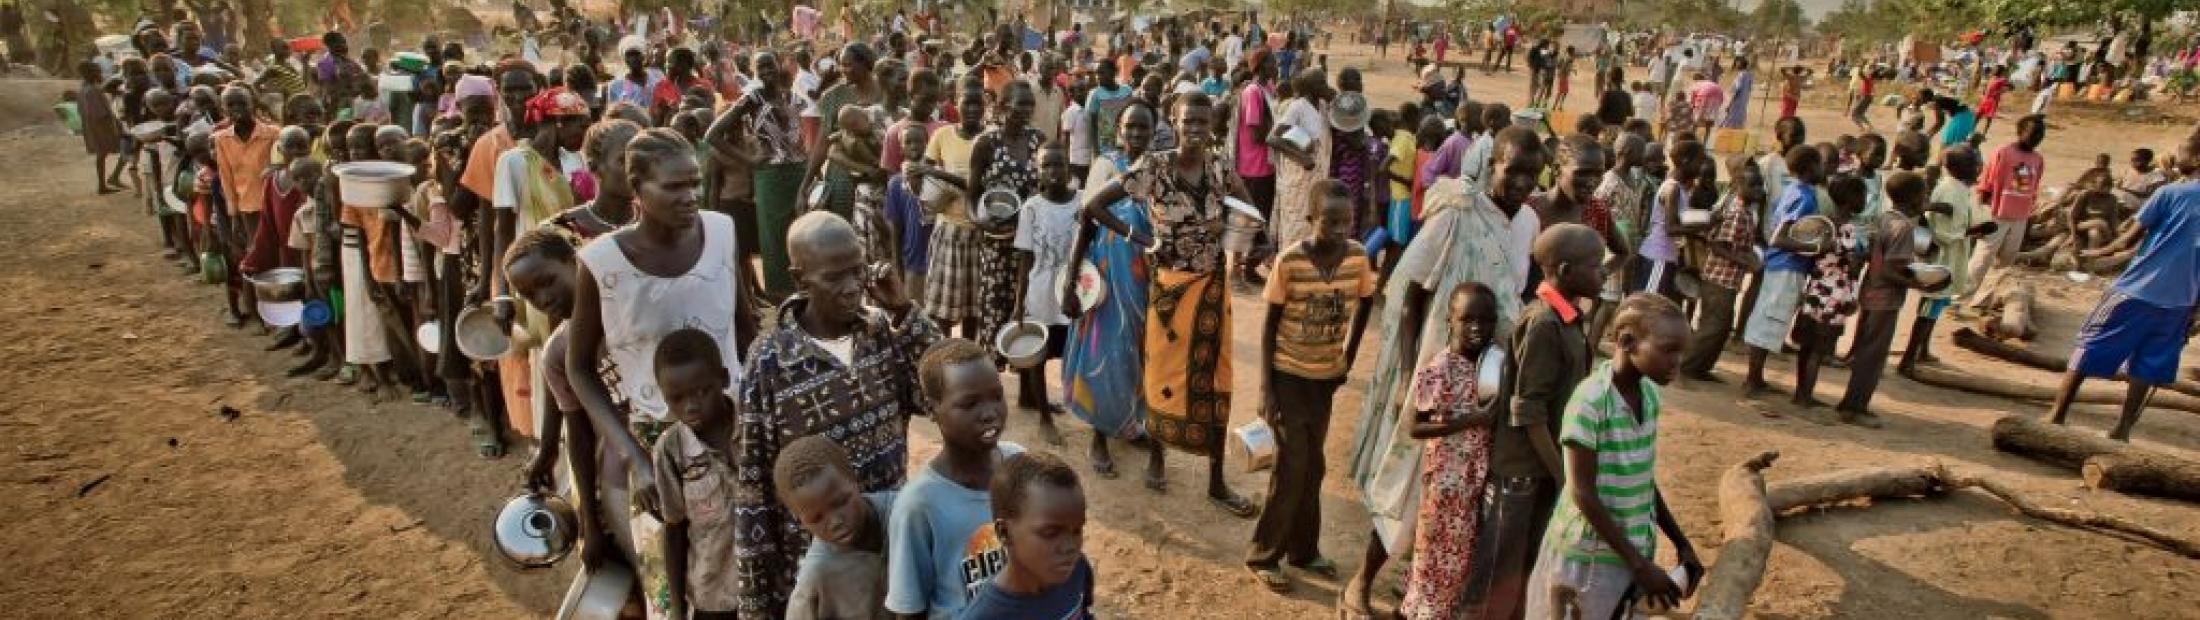 Mujeres y niños de Sudán del Sur huyen a Uganda 